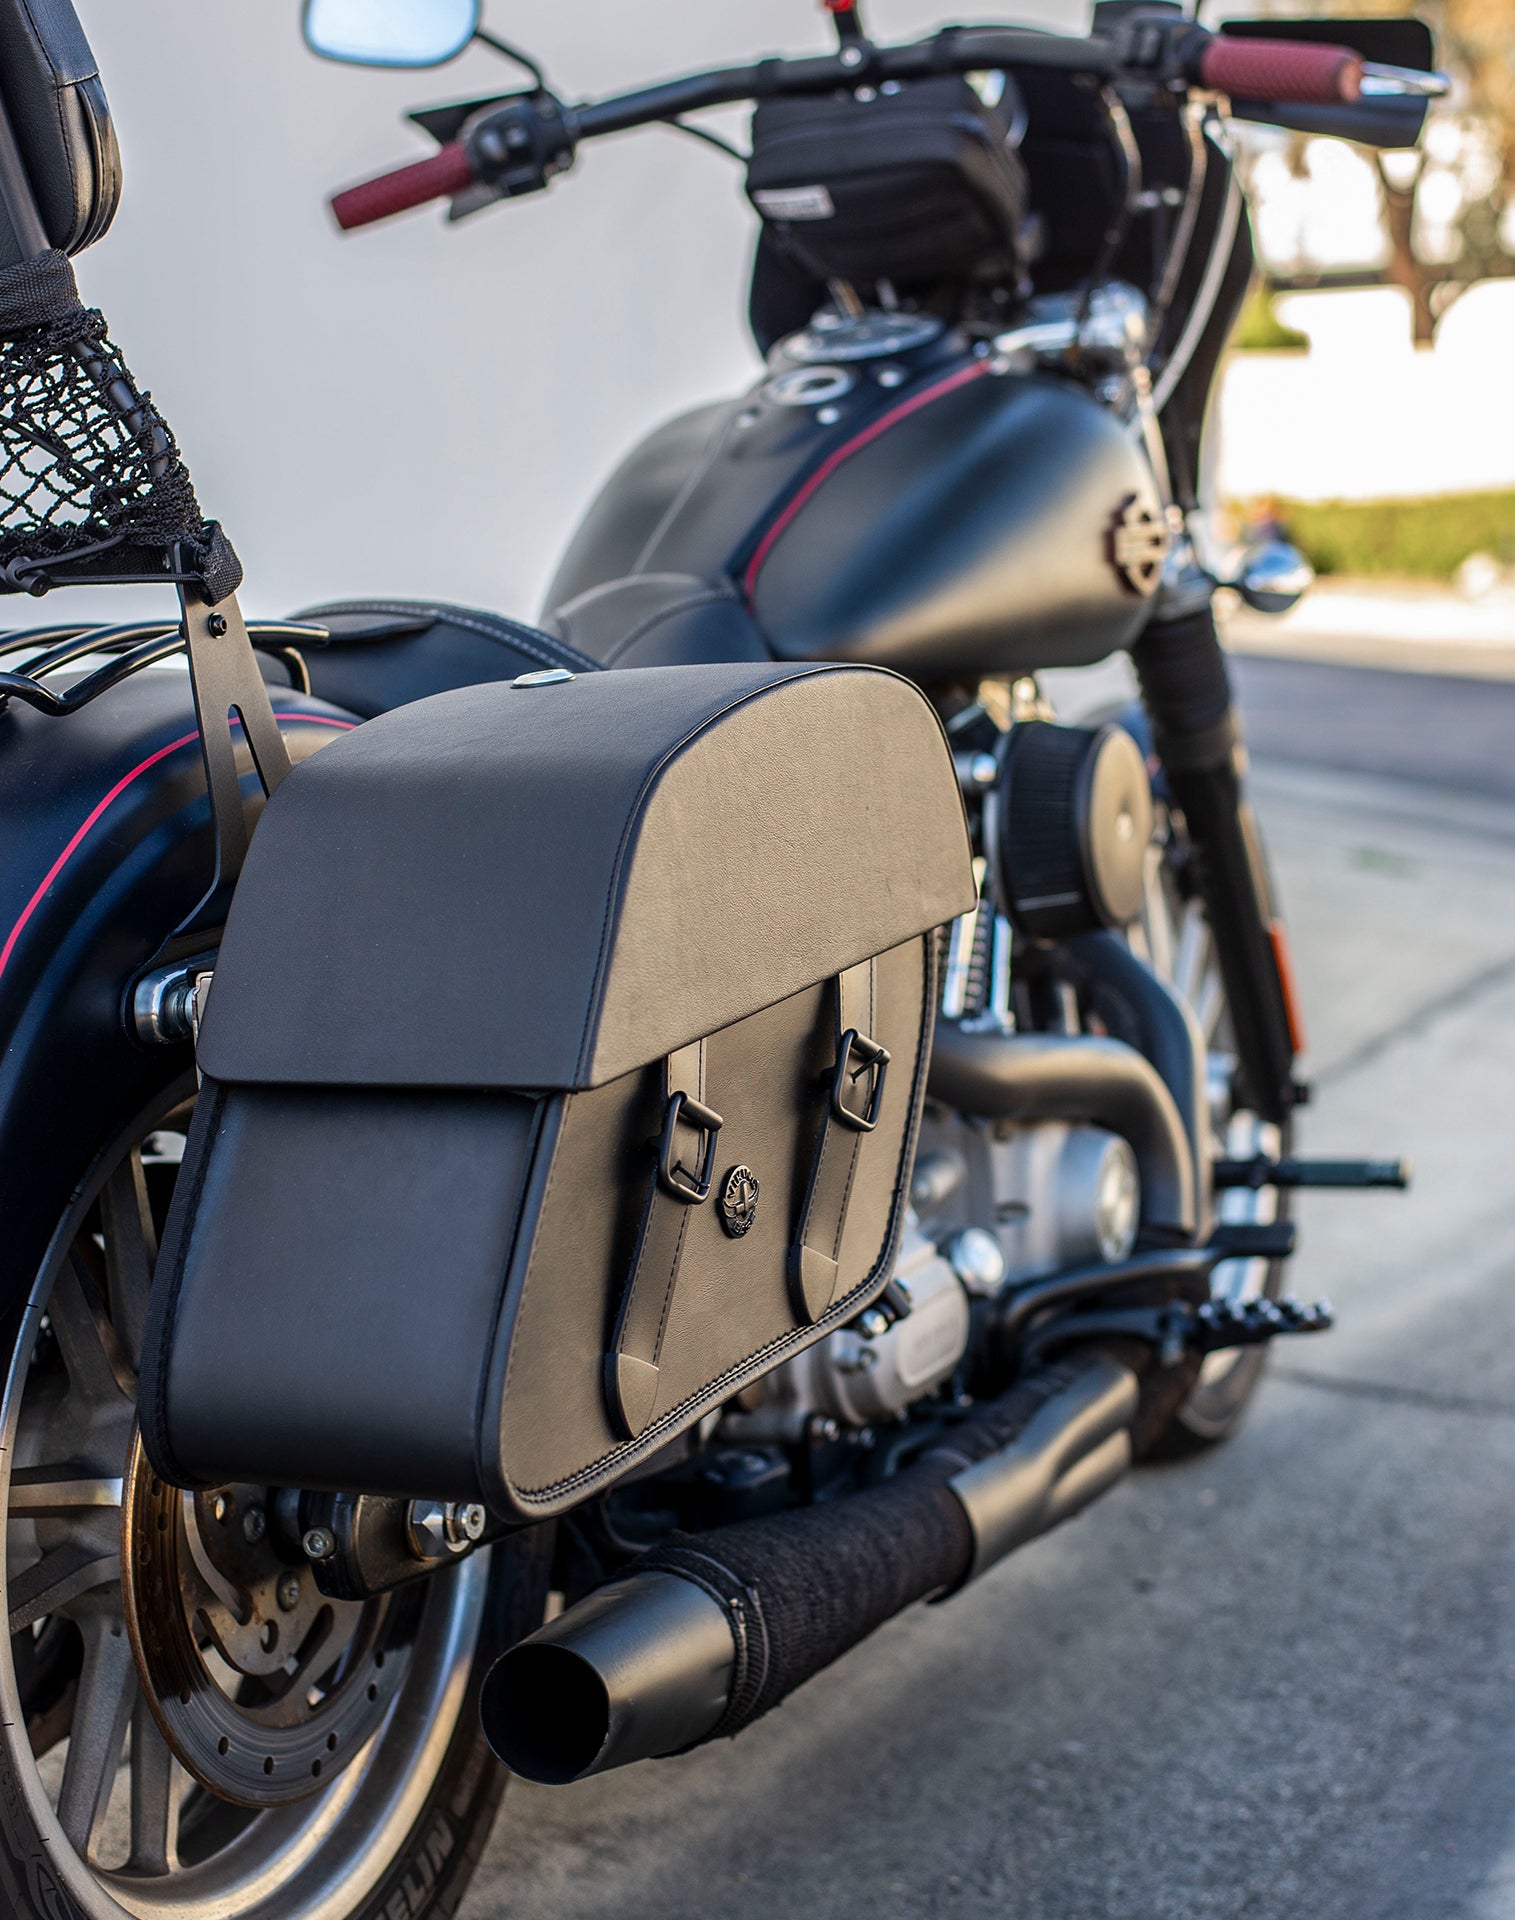 33L - Baelor Large Leather Motorcycle Saddlebags for Harley Dyna Super Glide FXD/I